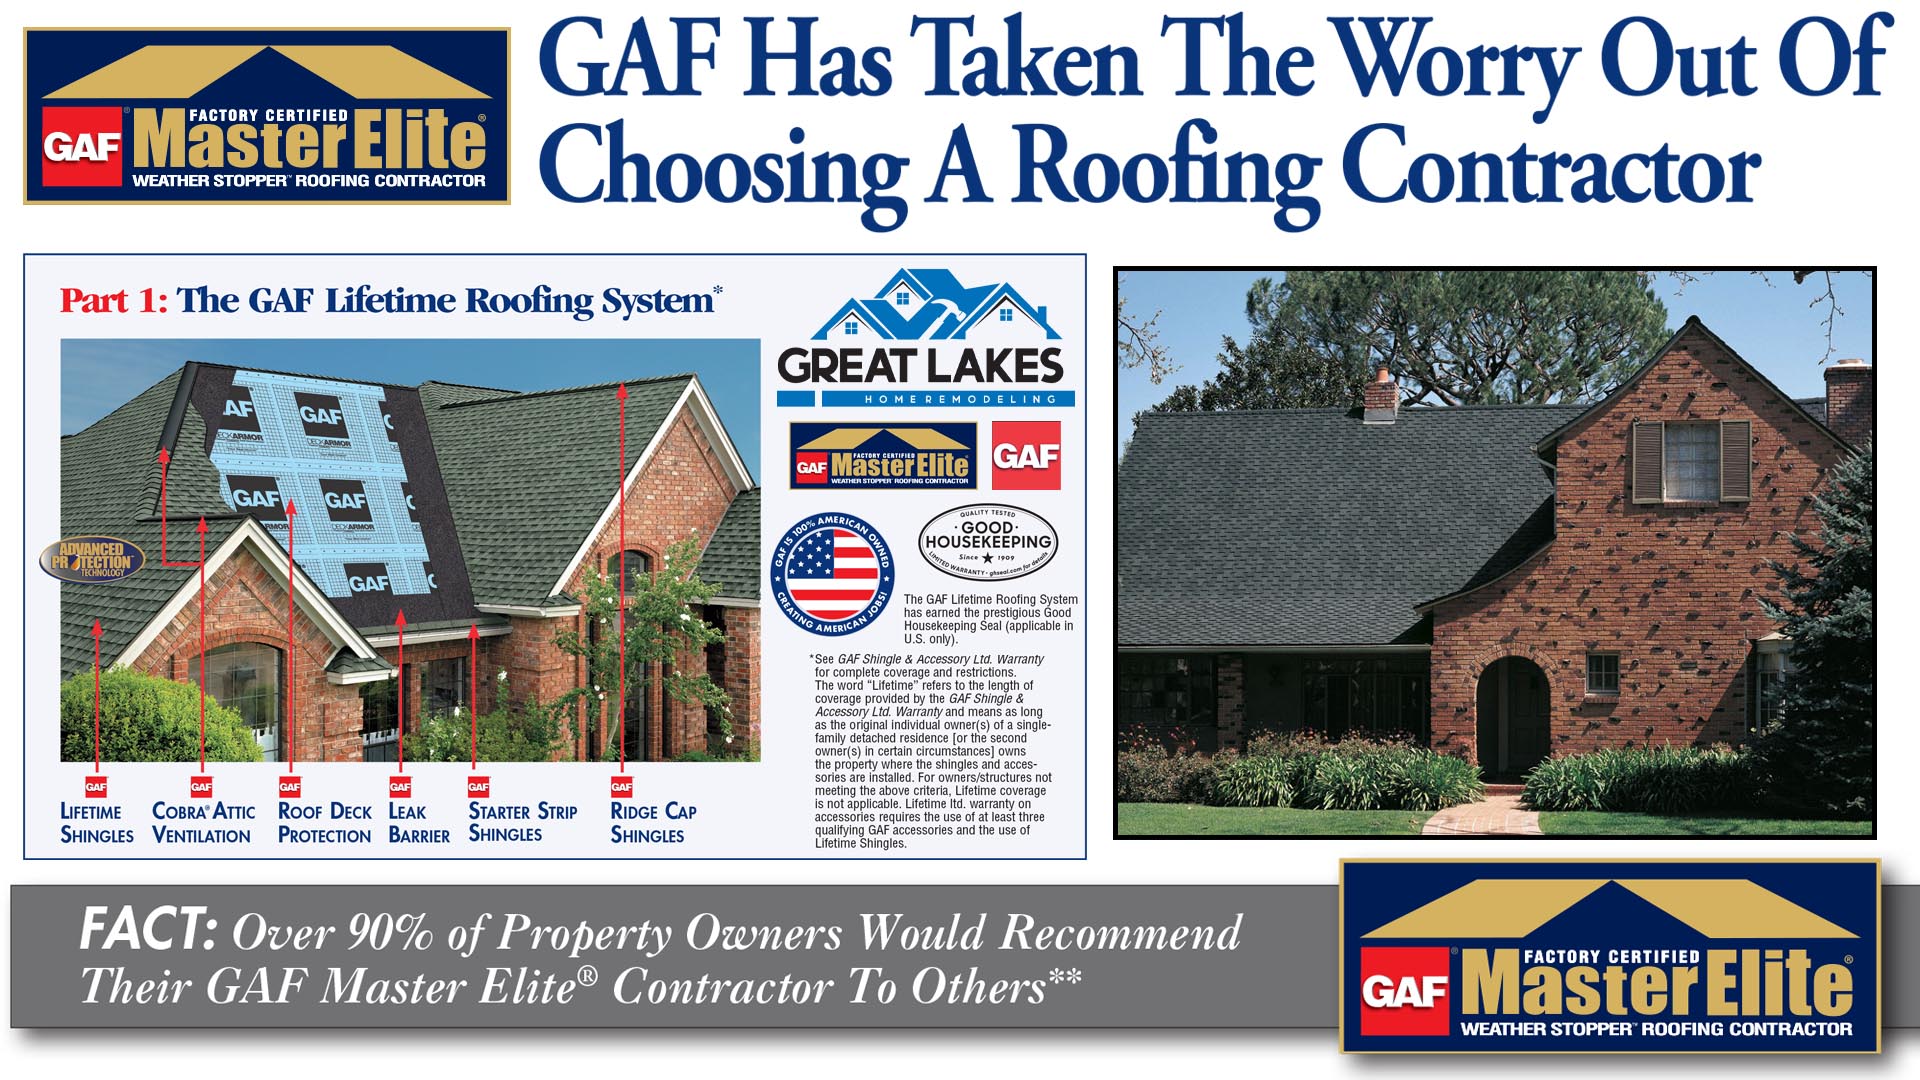 GAF Master Elite Roofer and GAF Roof System